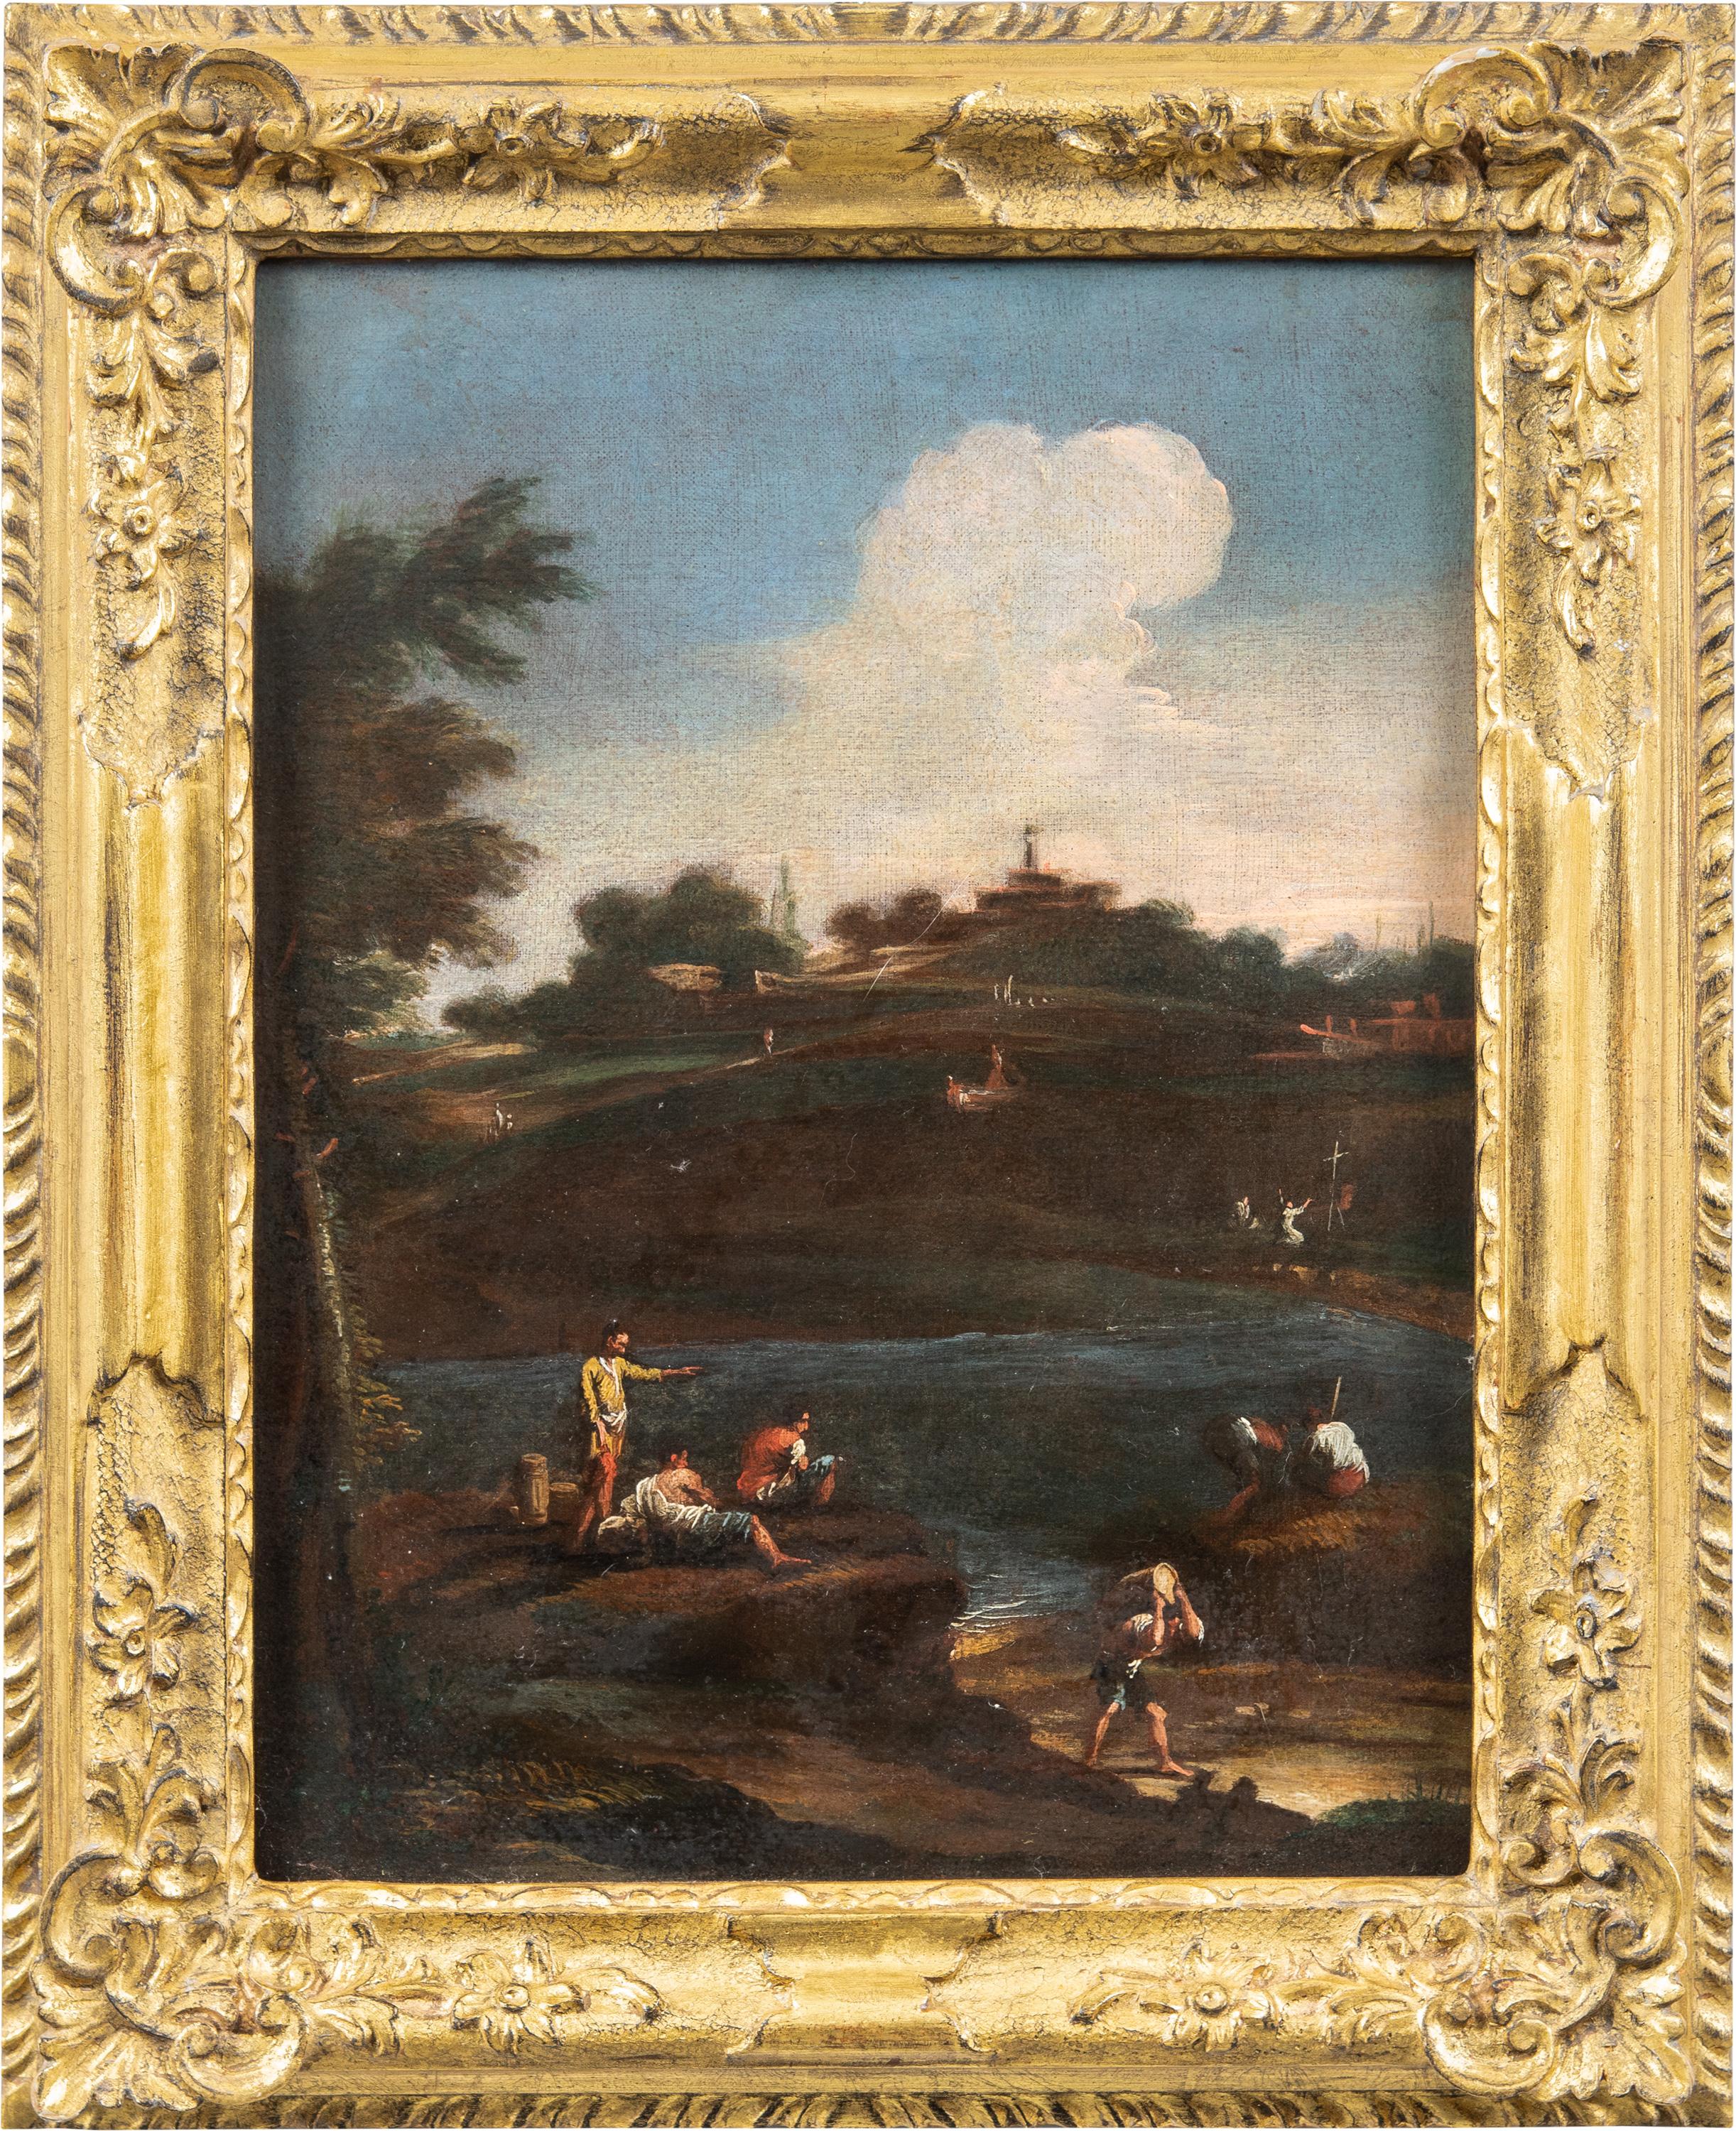 Unknown Landscape Painting – Venezianischer Anhänger von Marco Ricci – Landschaftsmalerei mit Figuren aus dem 18. Jahrhundert